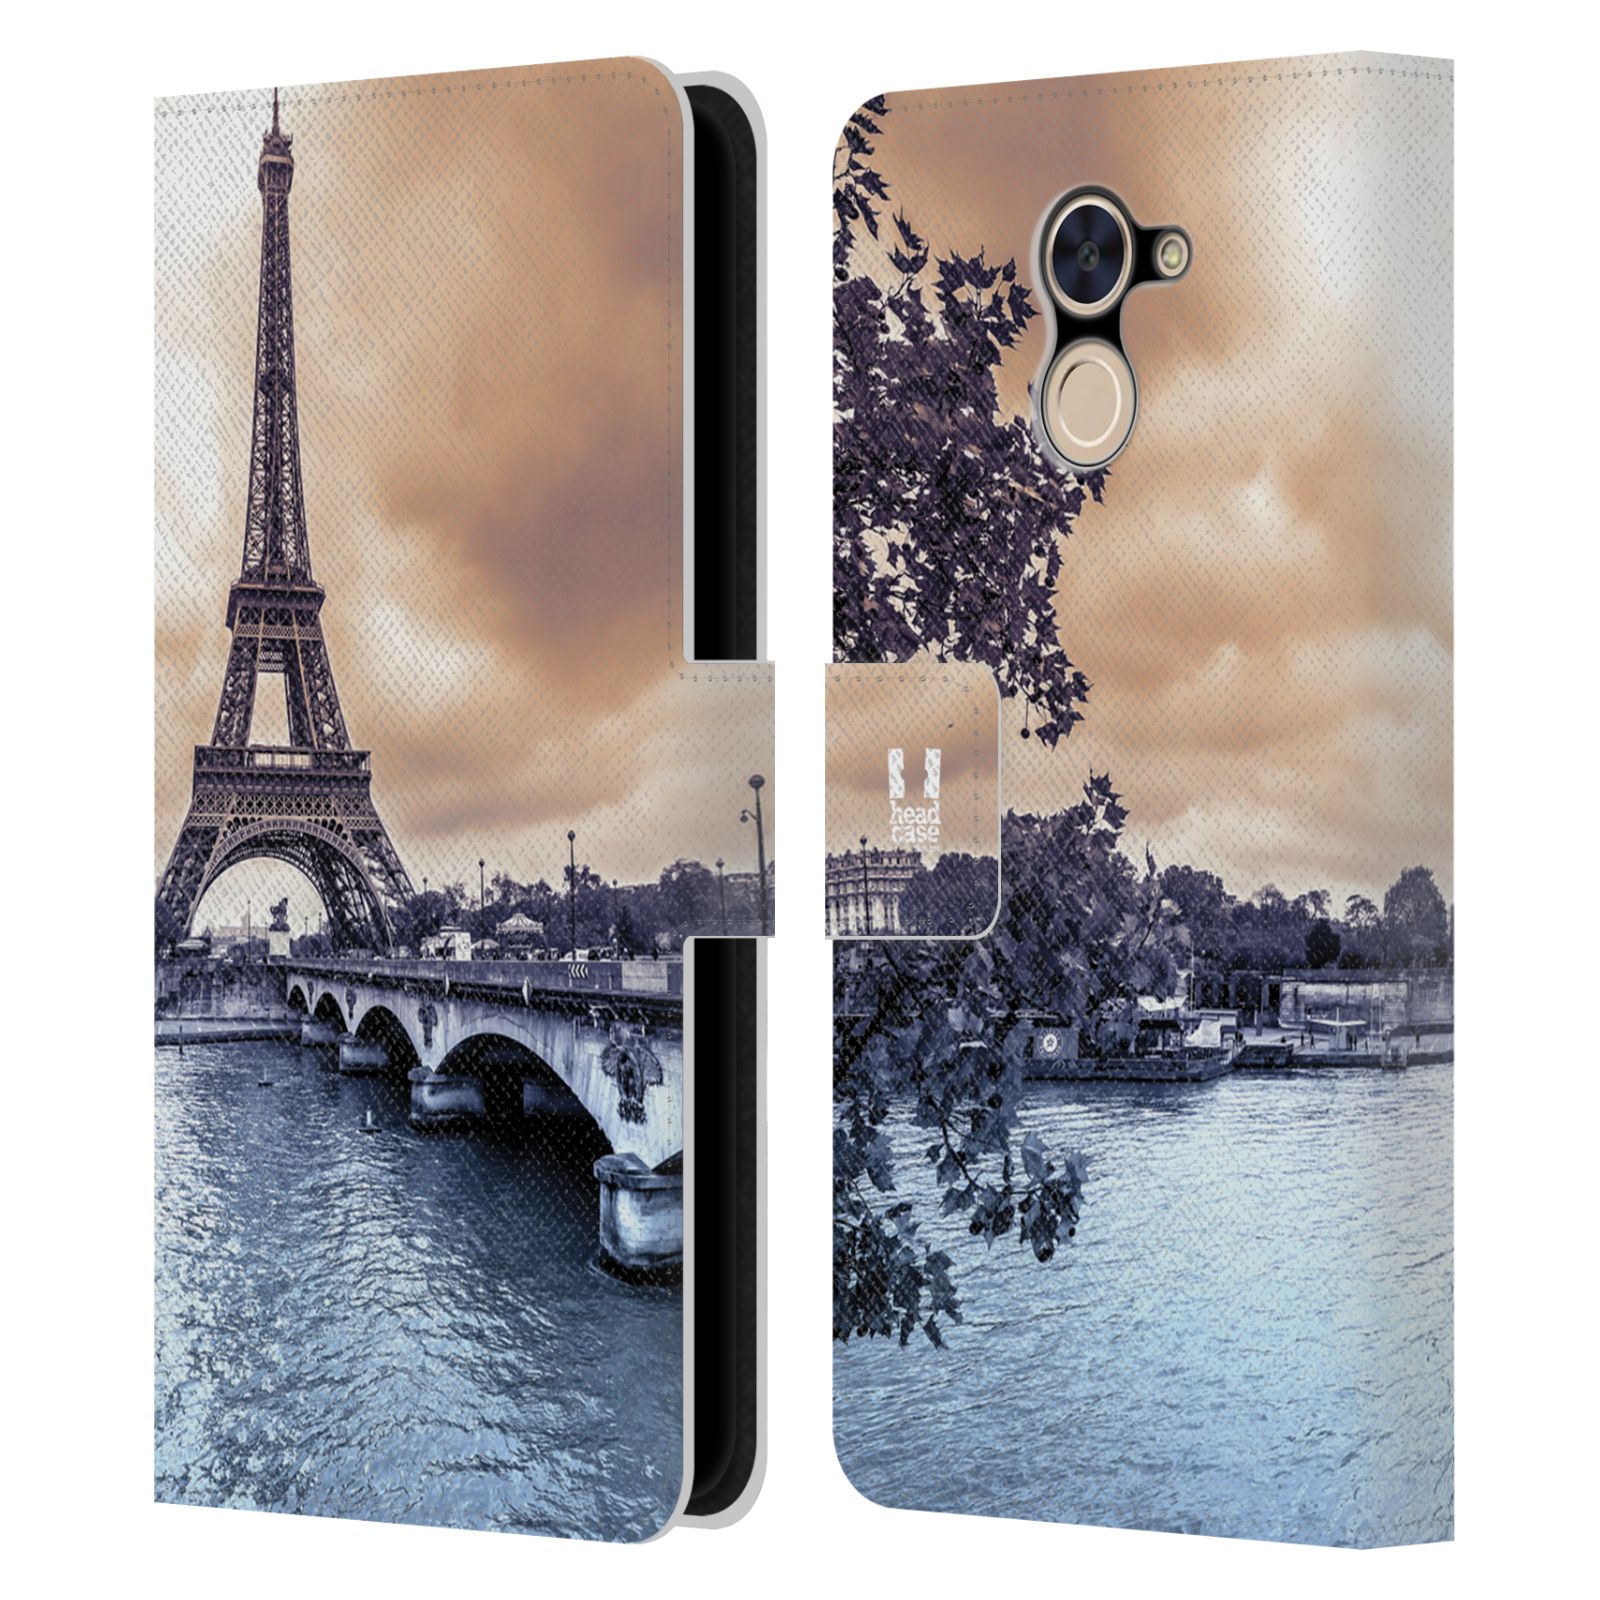 Pouzdro na mobil Huawei Y7 / Y7 Prime - Head Case - Paříž Eiffelova věž